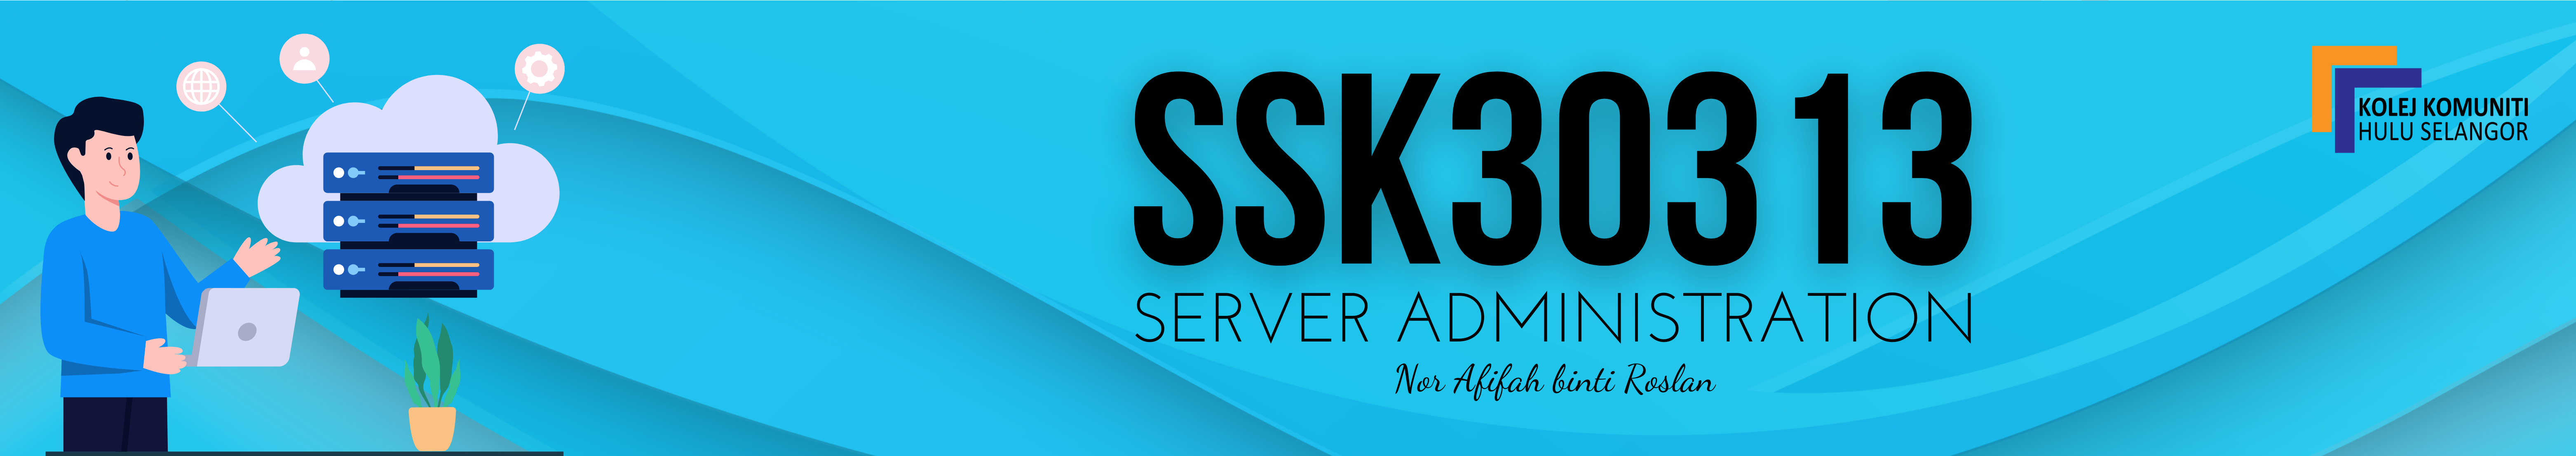 KKHS | SSK30313 SERVER ADMINISTRATION